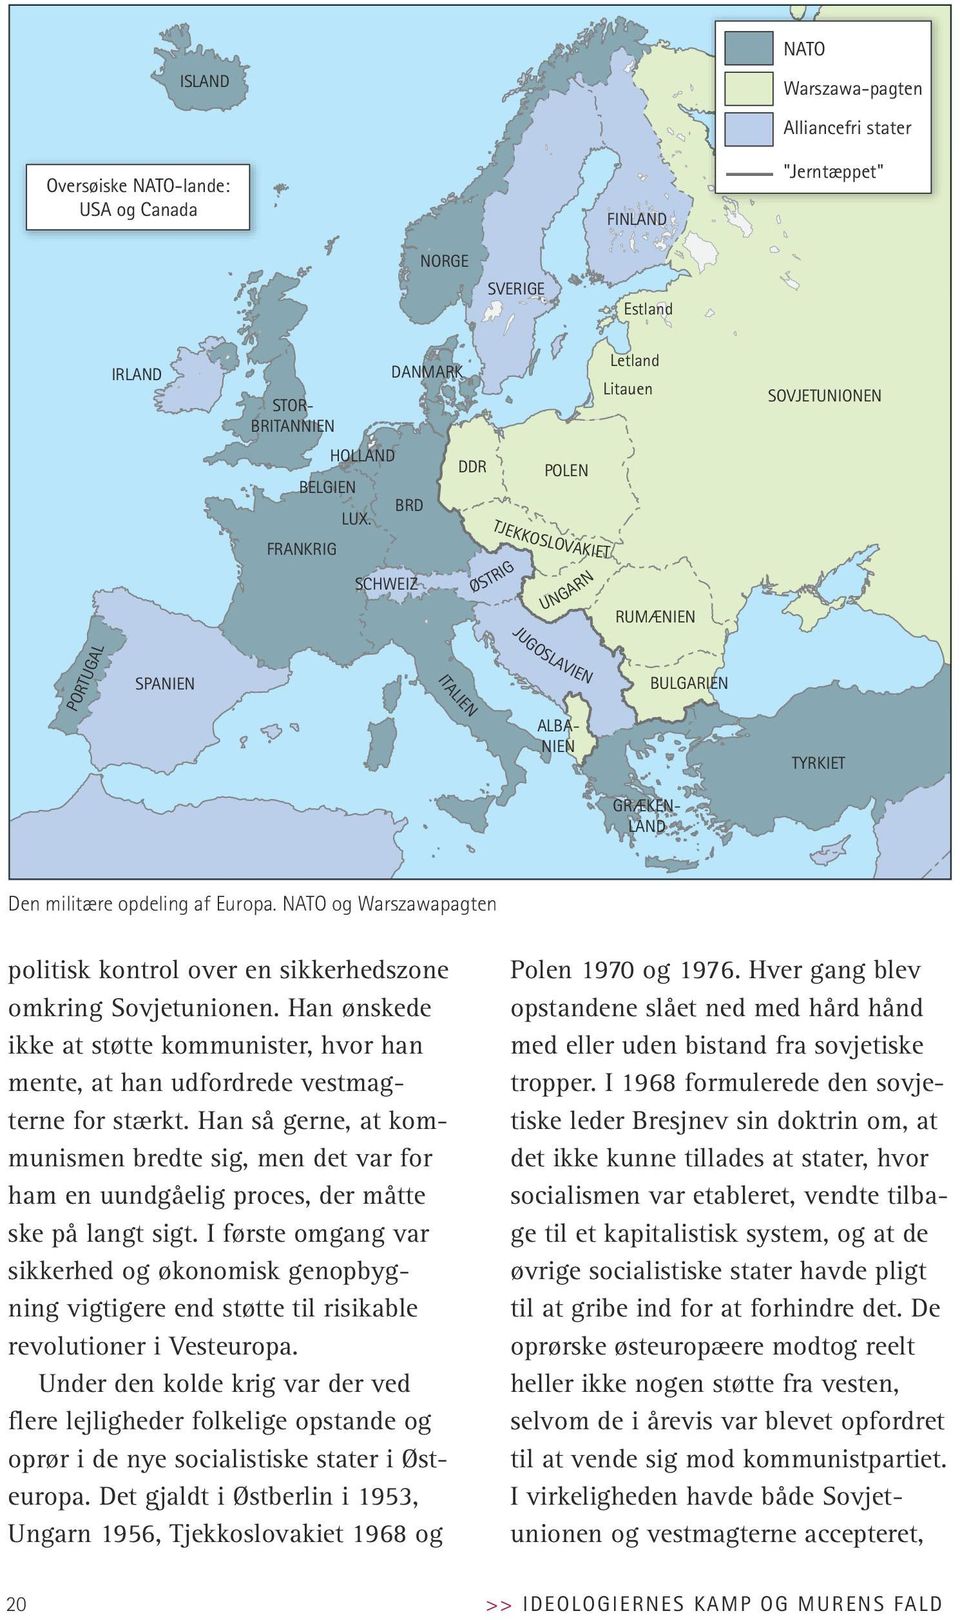 opdeling opdeling af af Europa. NATO og og Warszawapagtan Warszawapagten politisk kontrol over en sikkerhedszone omkring Sovjetunionen.